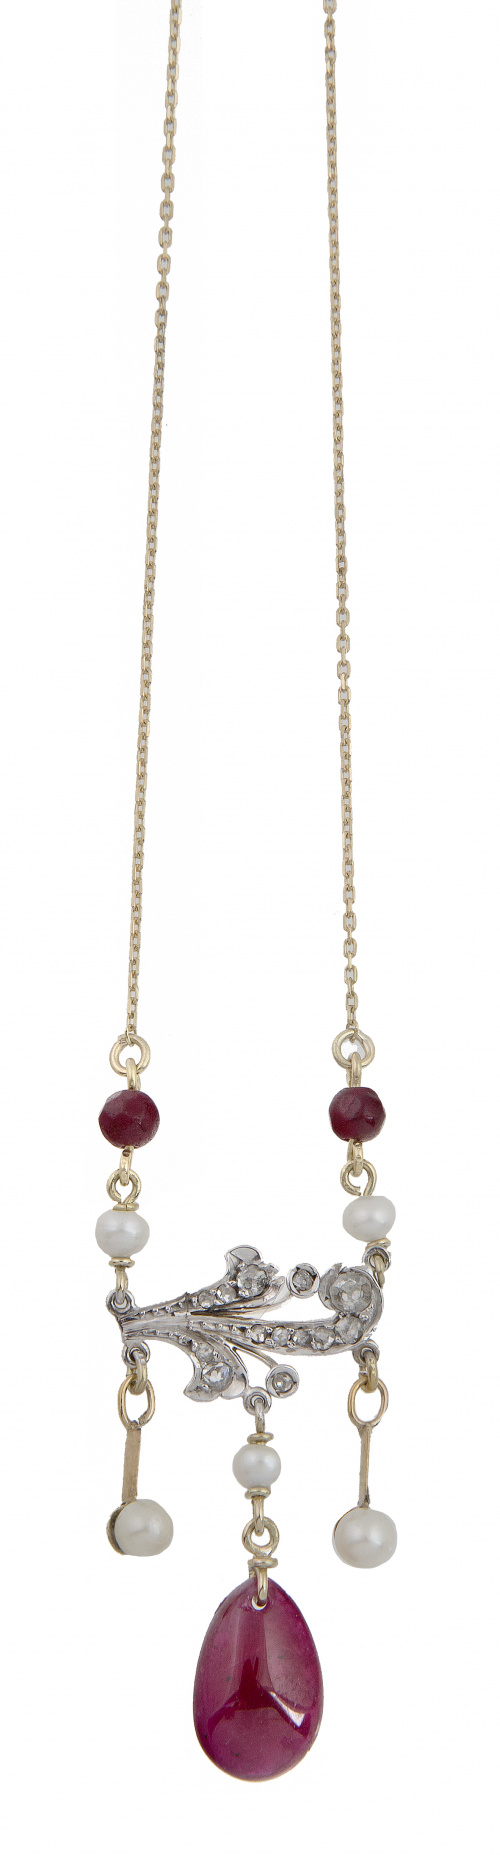 Pendentif estilo Belle Epoque con diamantes perlas y rubíes